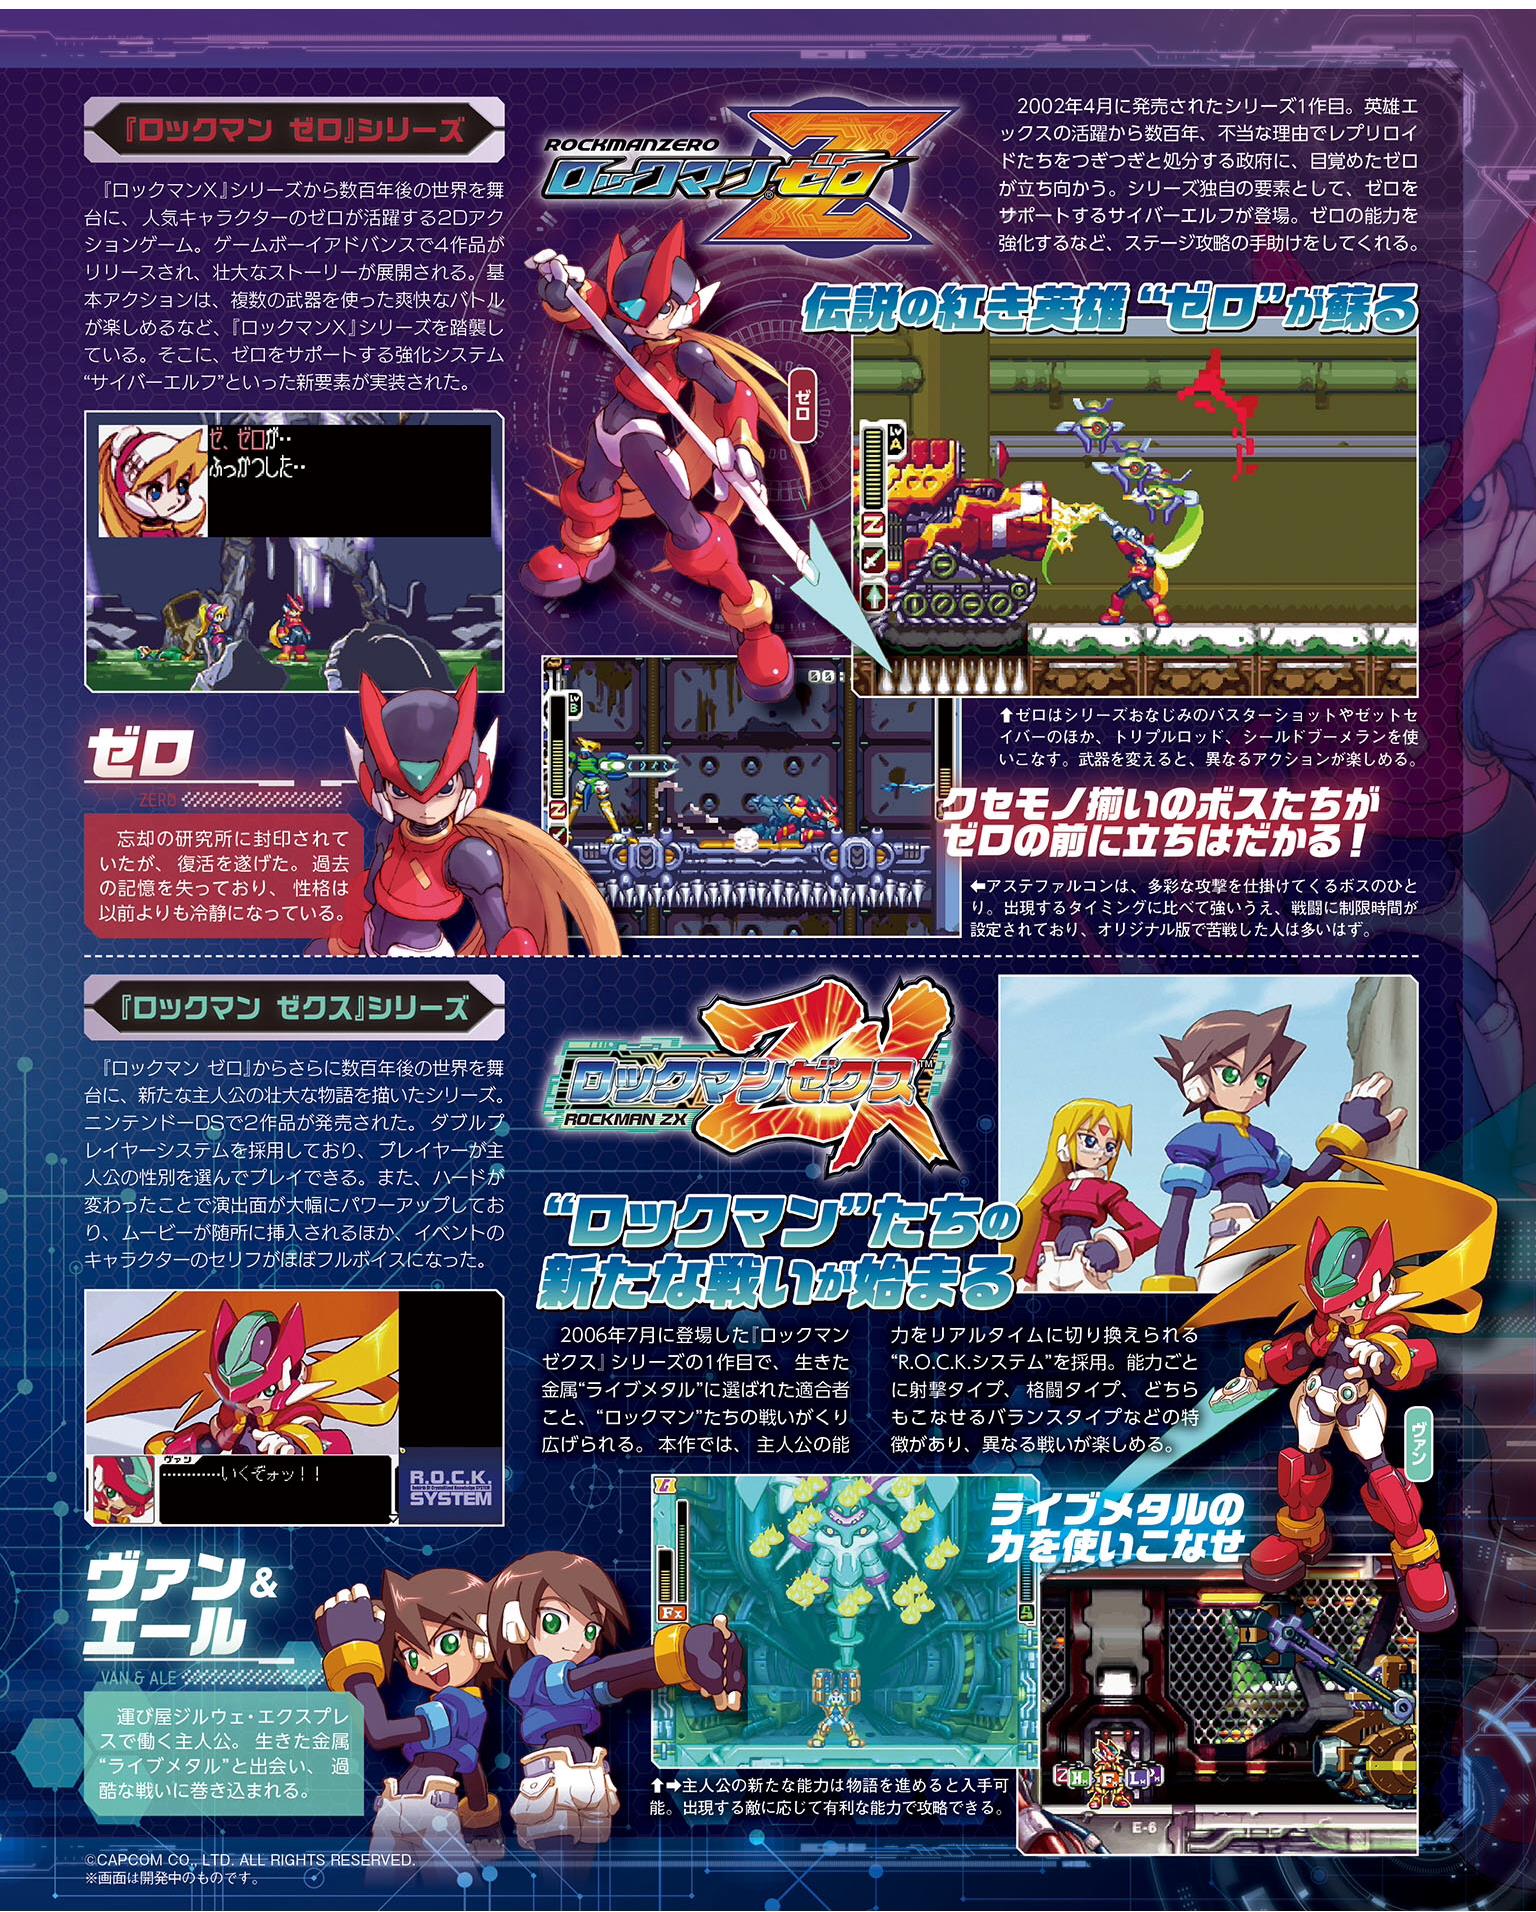 Scans Roundup Mega Man Zero Zx Legacy Collection Mario Sonic Samurai Shodown Disney Tsum Tsum Festival Nintendo Everything